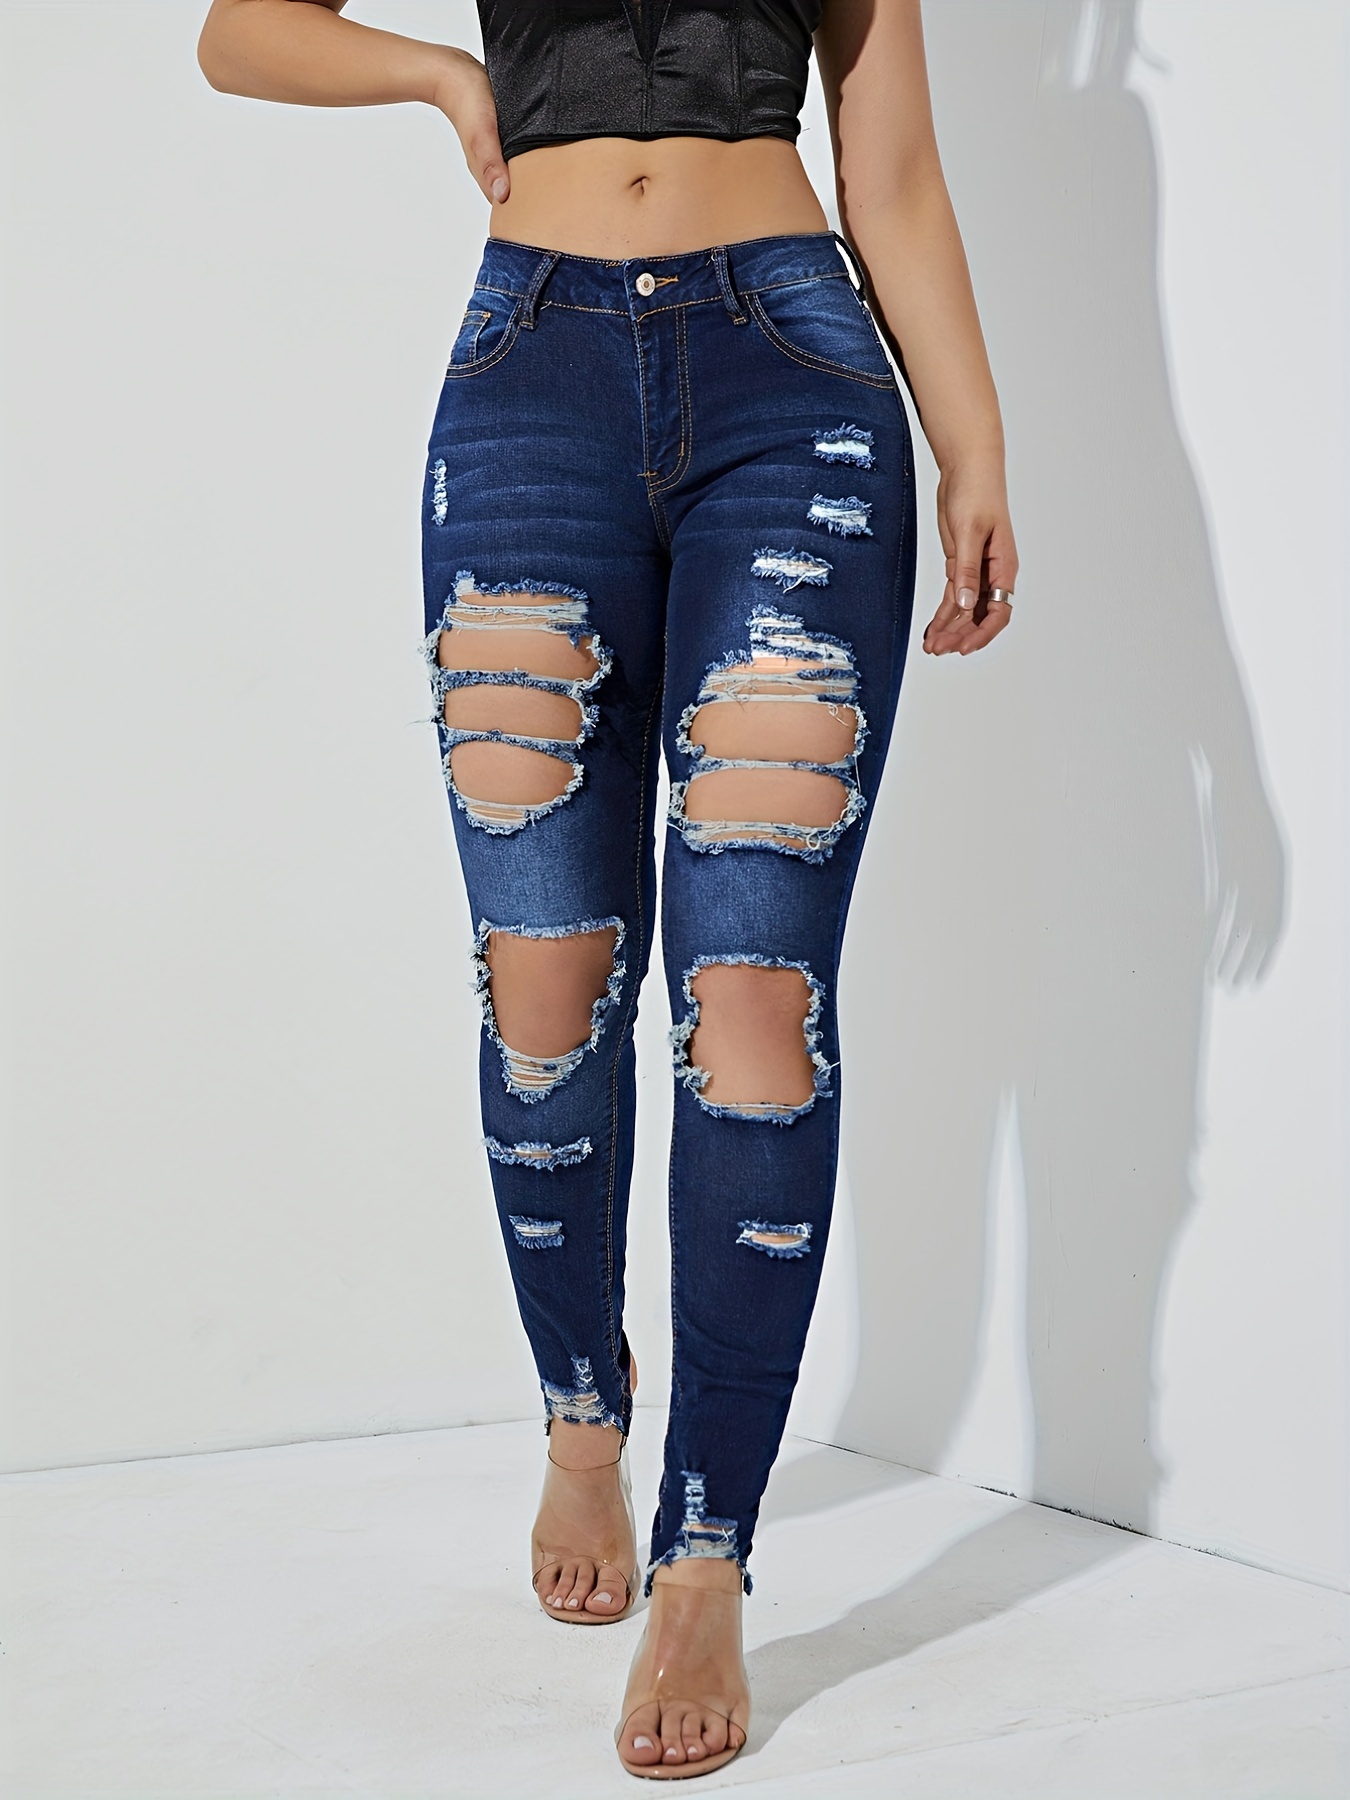 Blue Ripped Skinny Jeans Slash Pockets Distressed Tight Fit - Temu